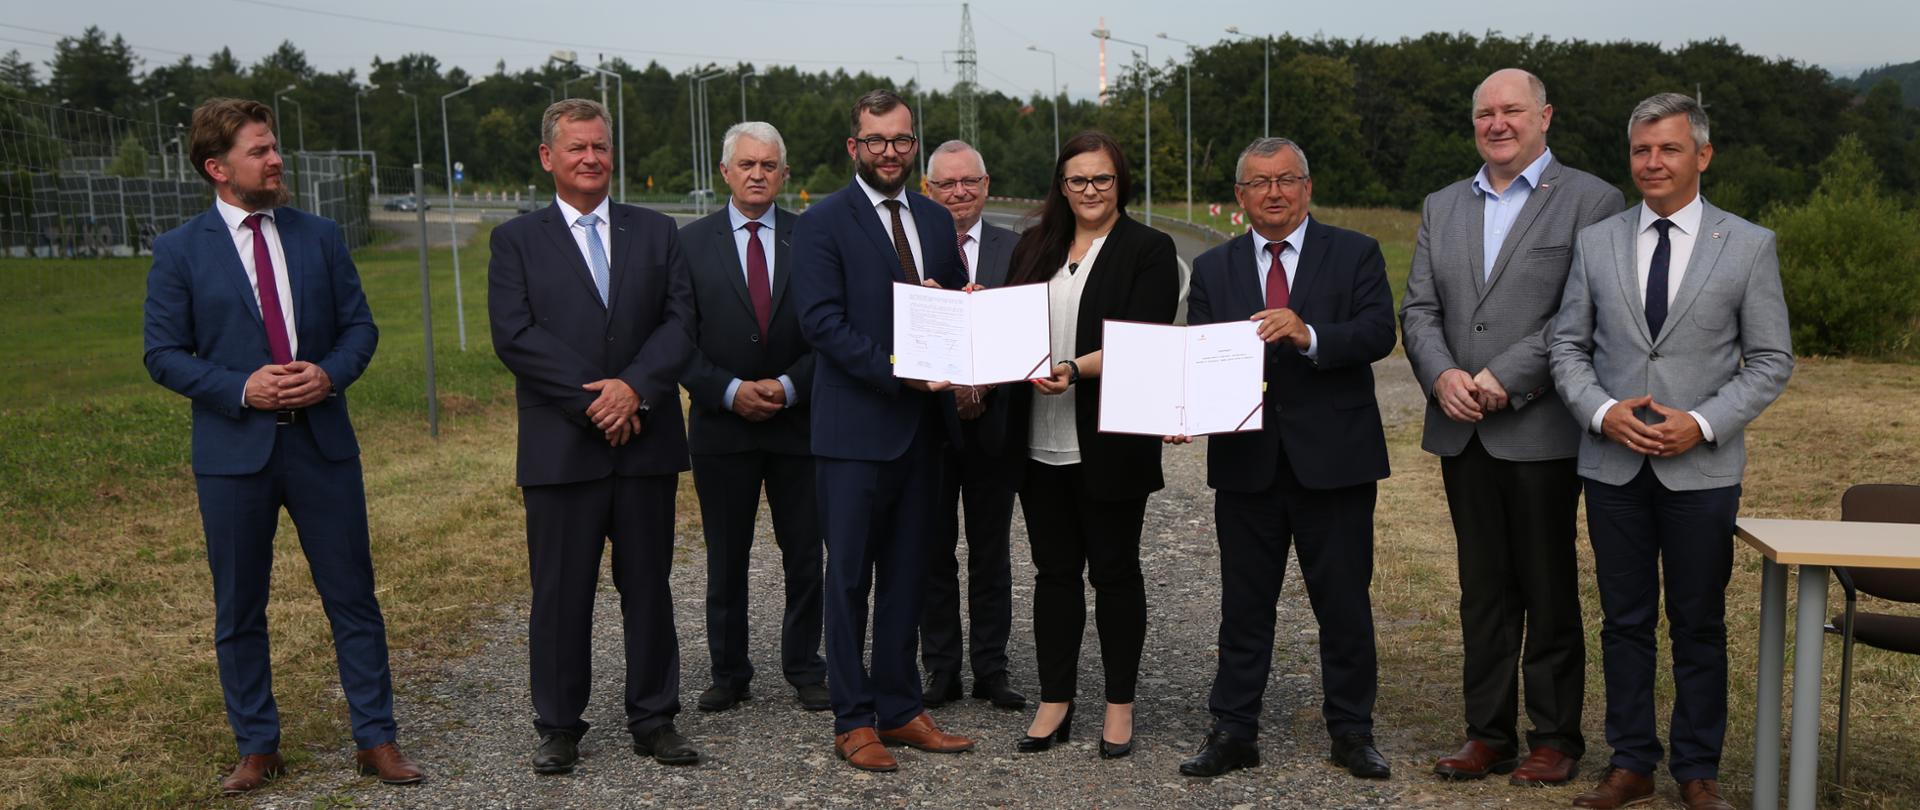 Na zdjęciu stoją uczestnicy podpisania umów na budowę nowego odcinka drogi ekspresowej S1. W środku stoją minister Małgorzata Jarosińska-Jedynak i wiceminister Grzegorz Puda.